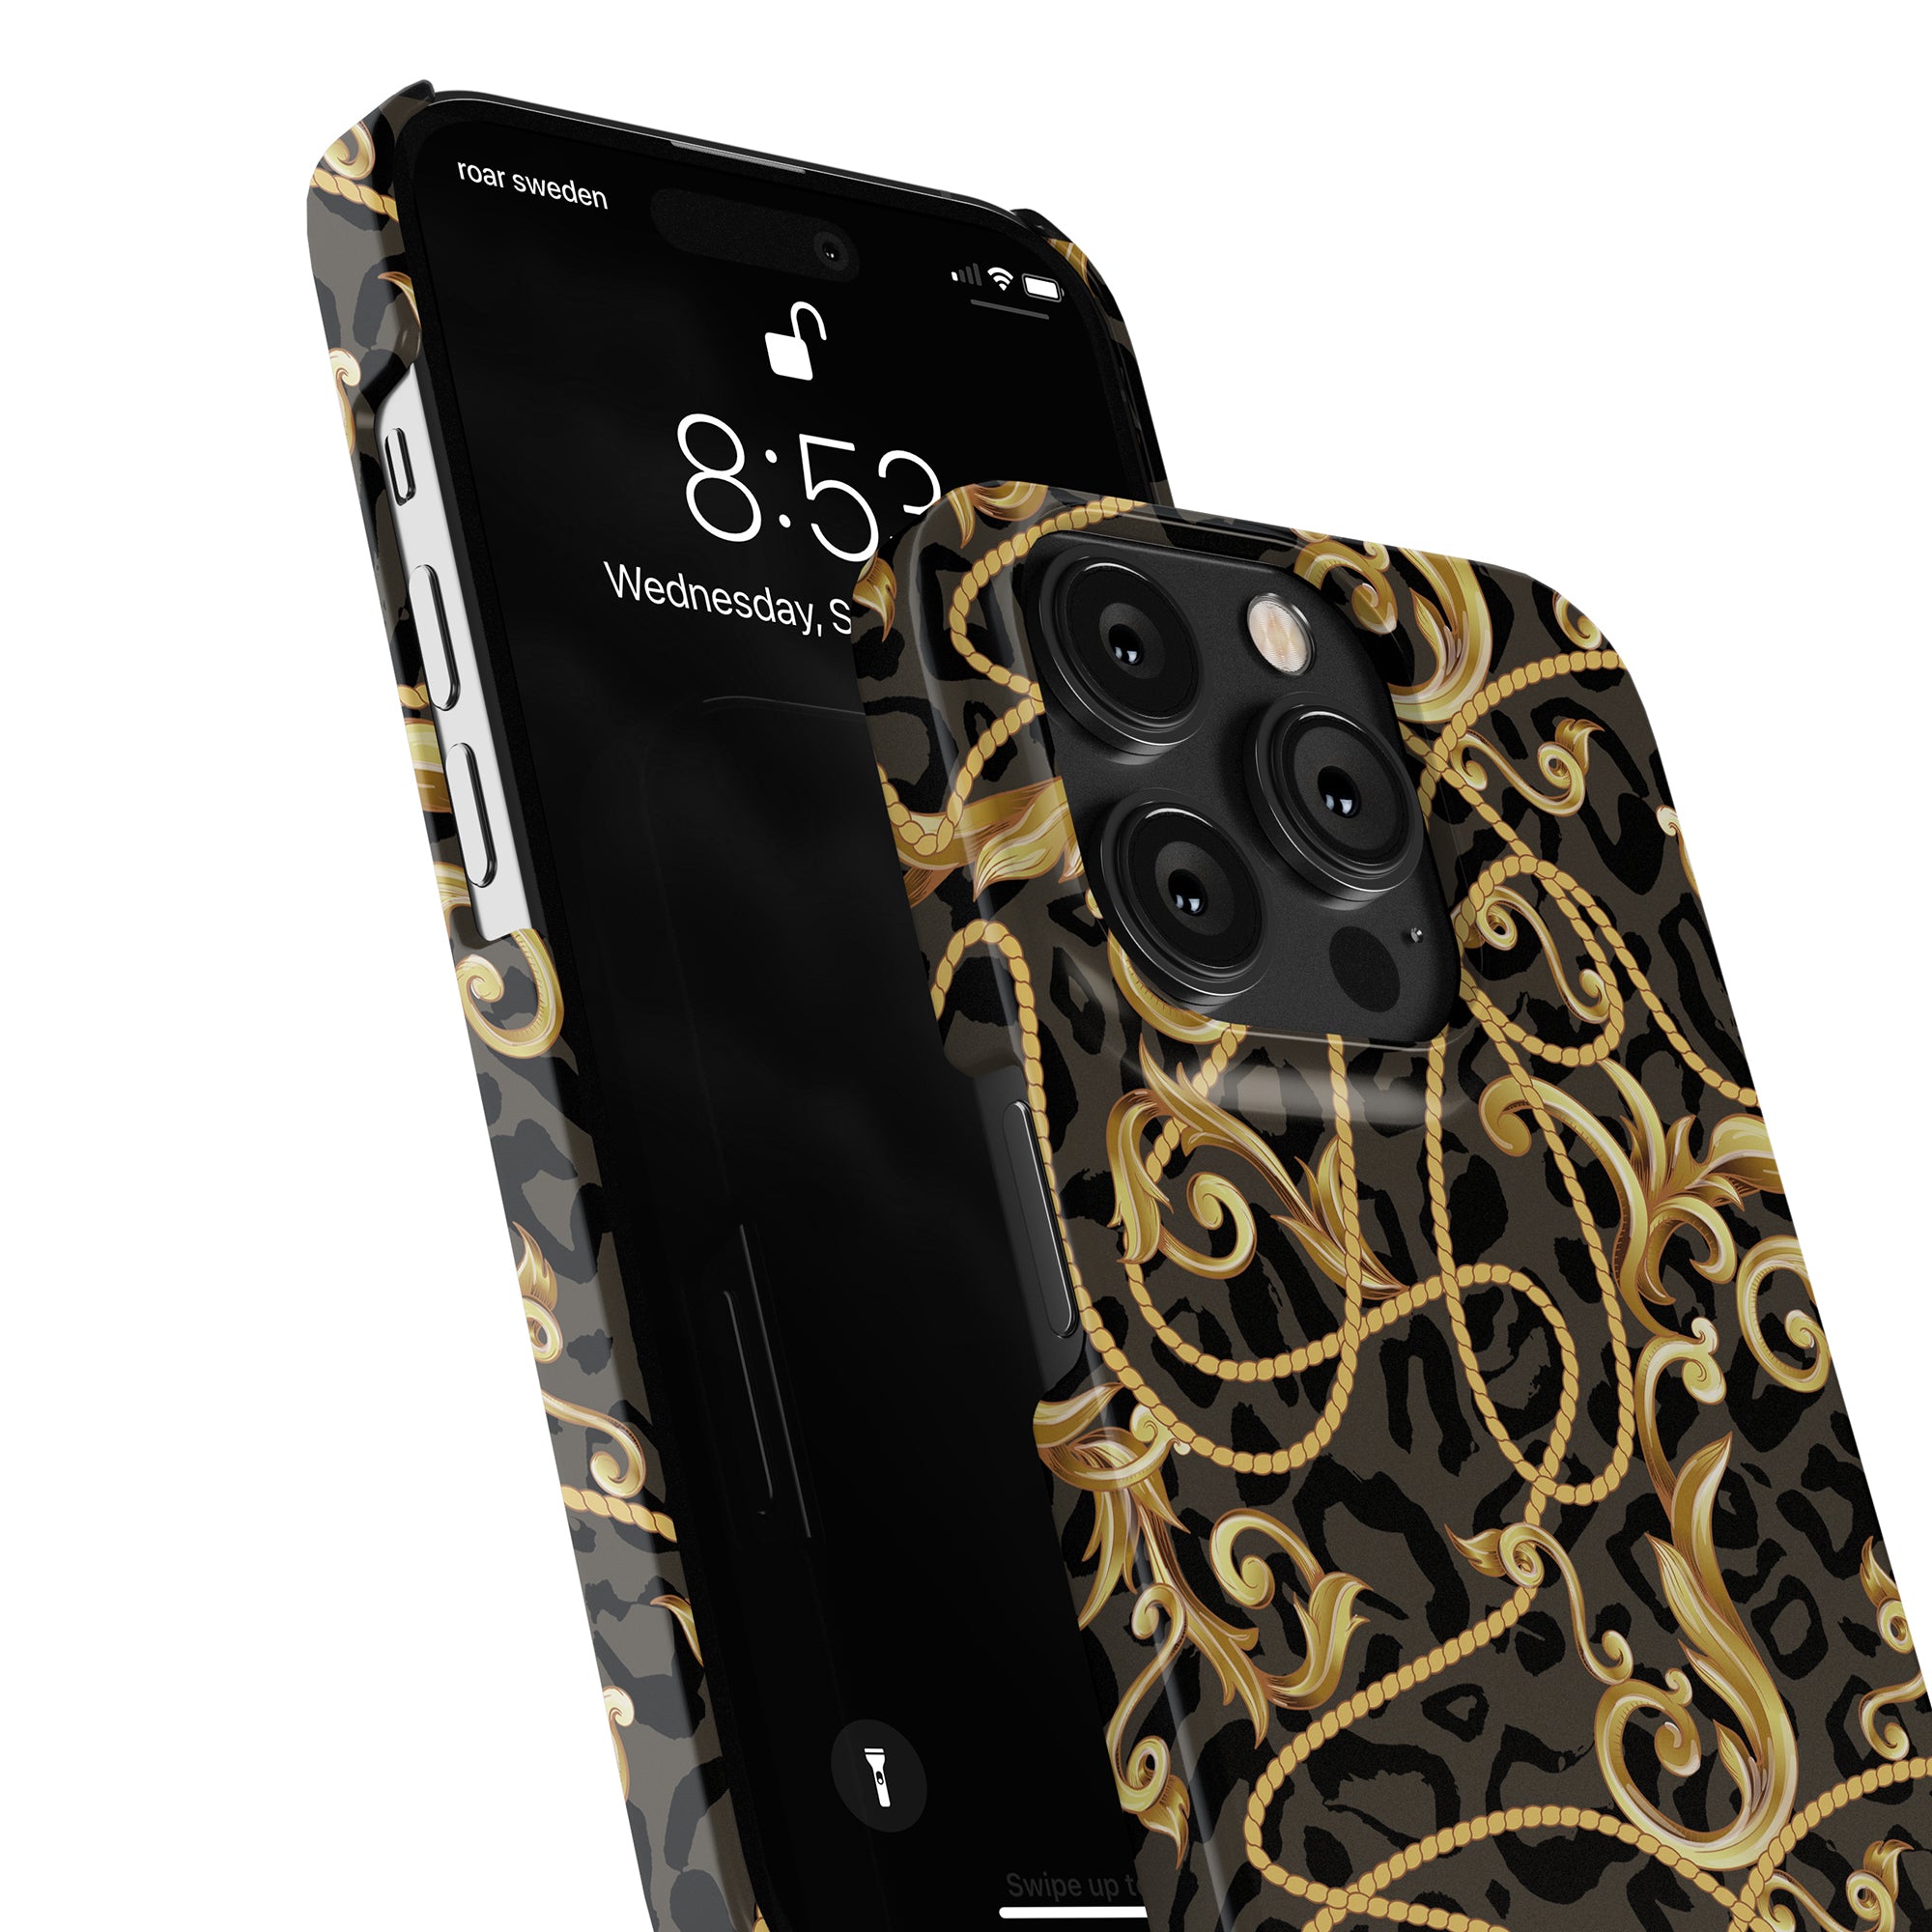 Ett barock - slimmad fodral för smartphone, med en utsmyckad design i svart och guld.